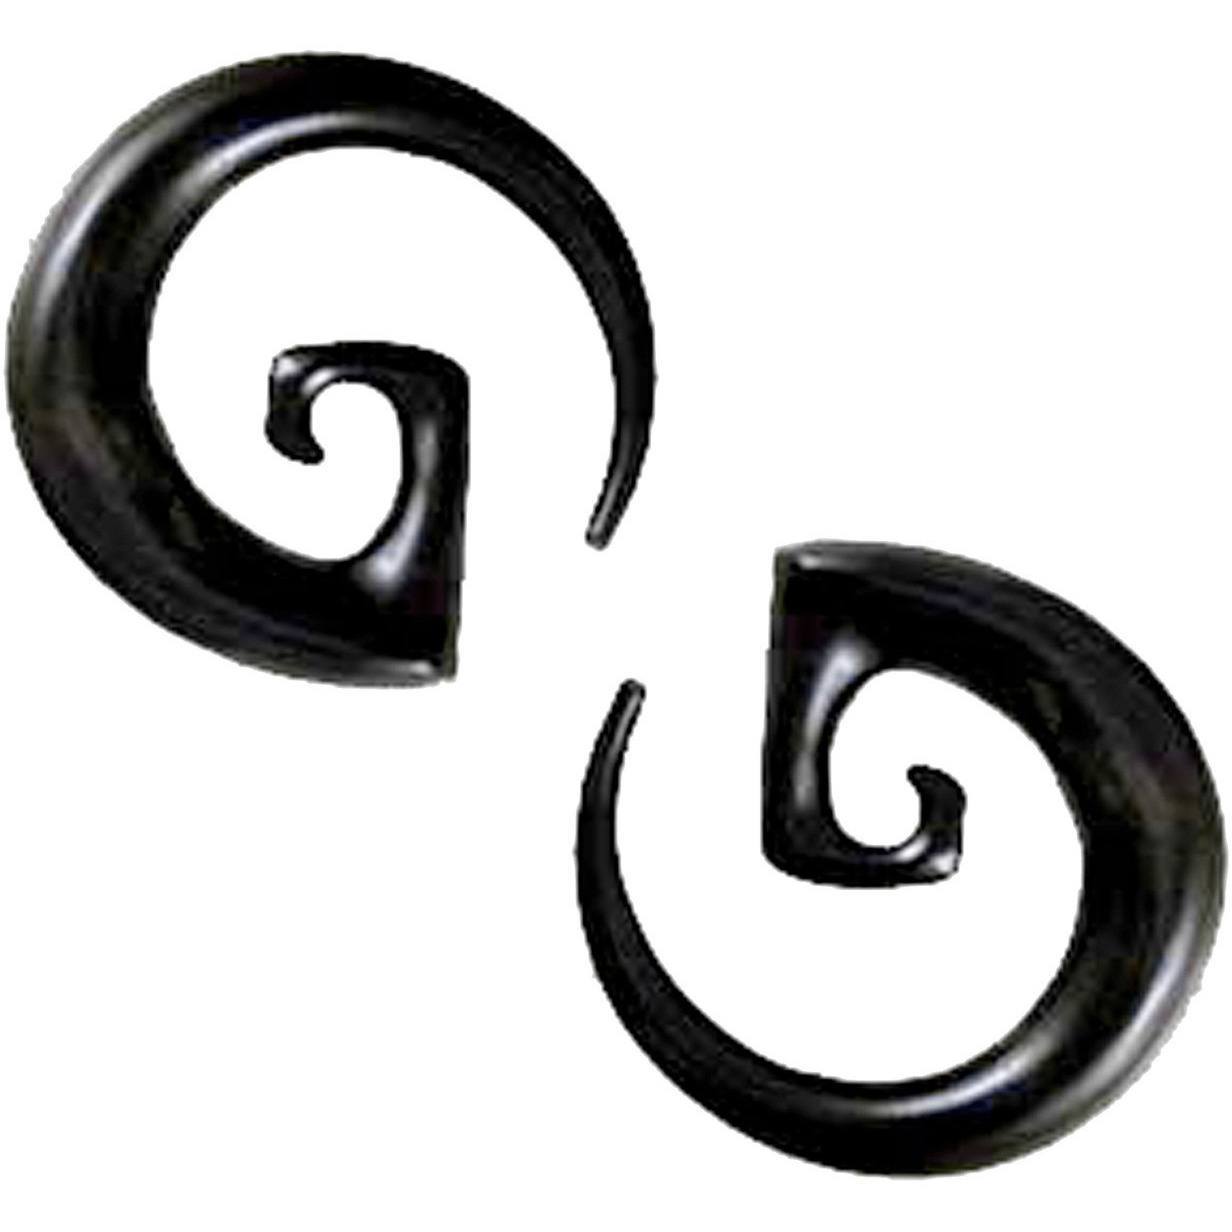 Gauged Earrings :|: Garuda Spirals, 00 gauge earrings, Black